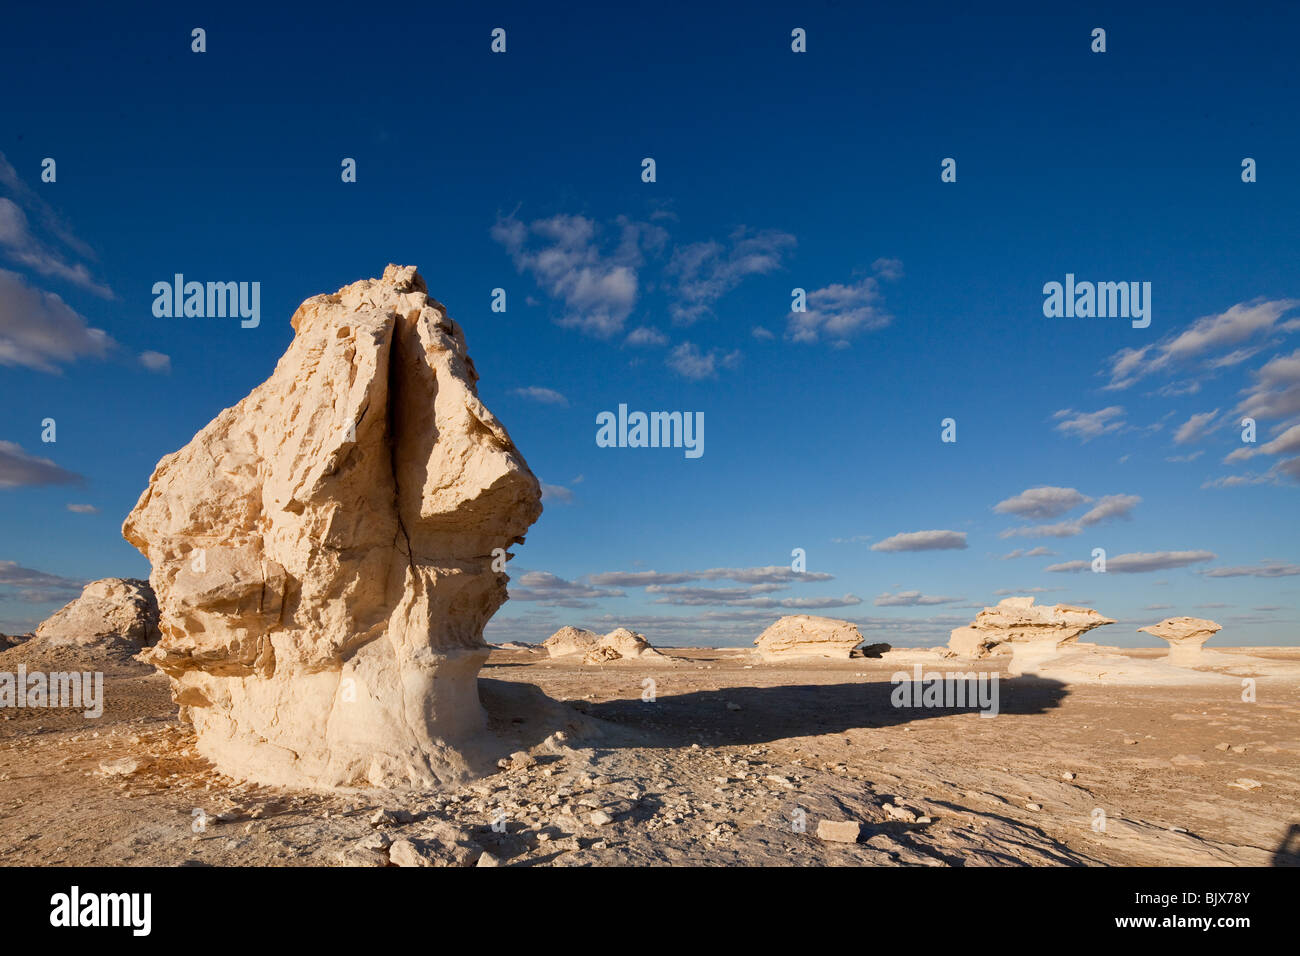 chalk rock formations in the white desert, Farafra oasis, Egypt Stock Photo